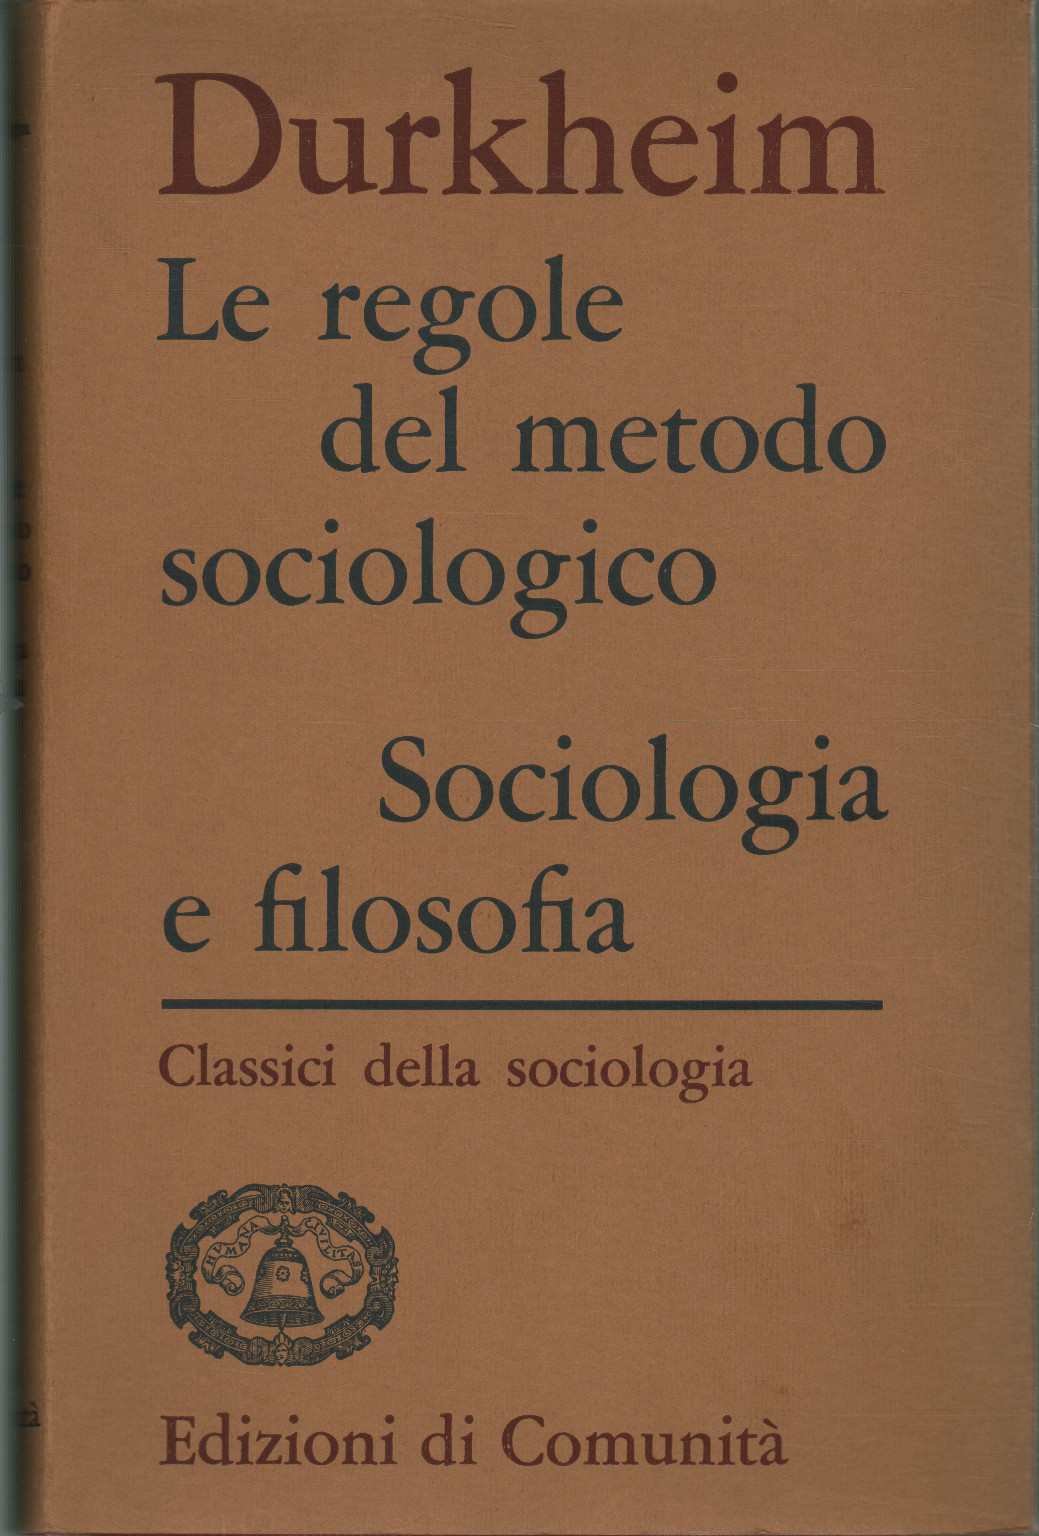 Las reglas del método sociológico. Sociología